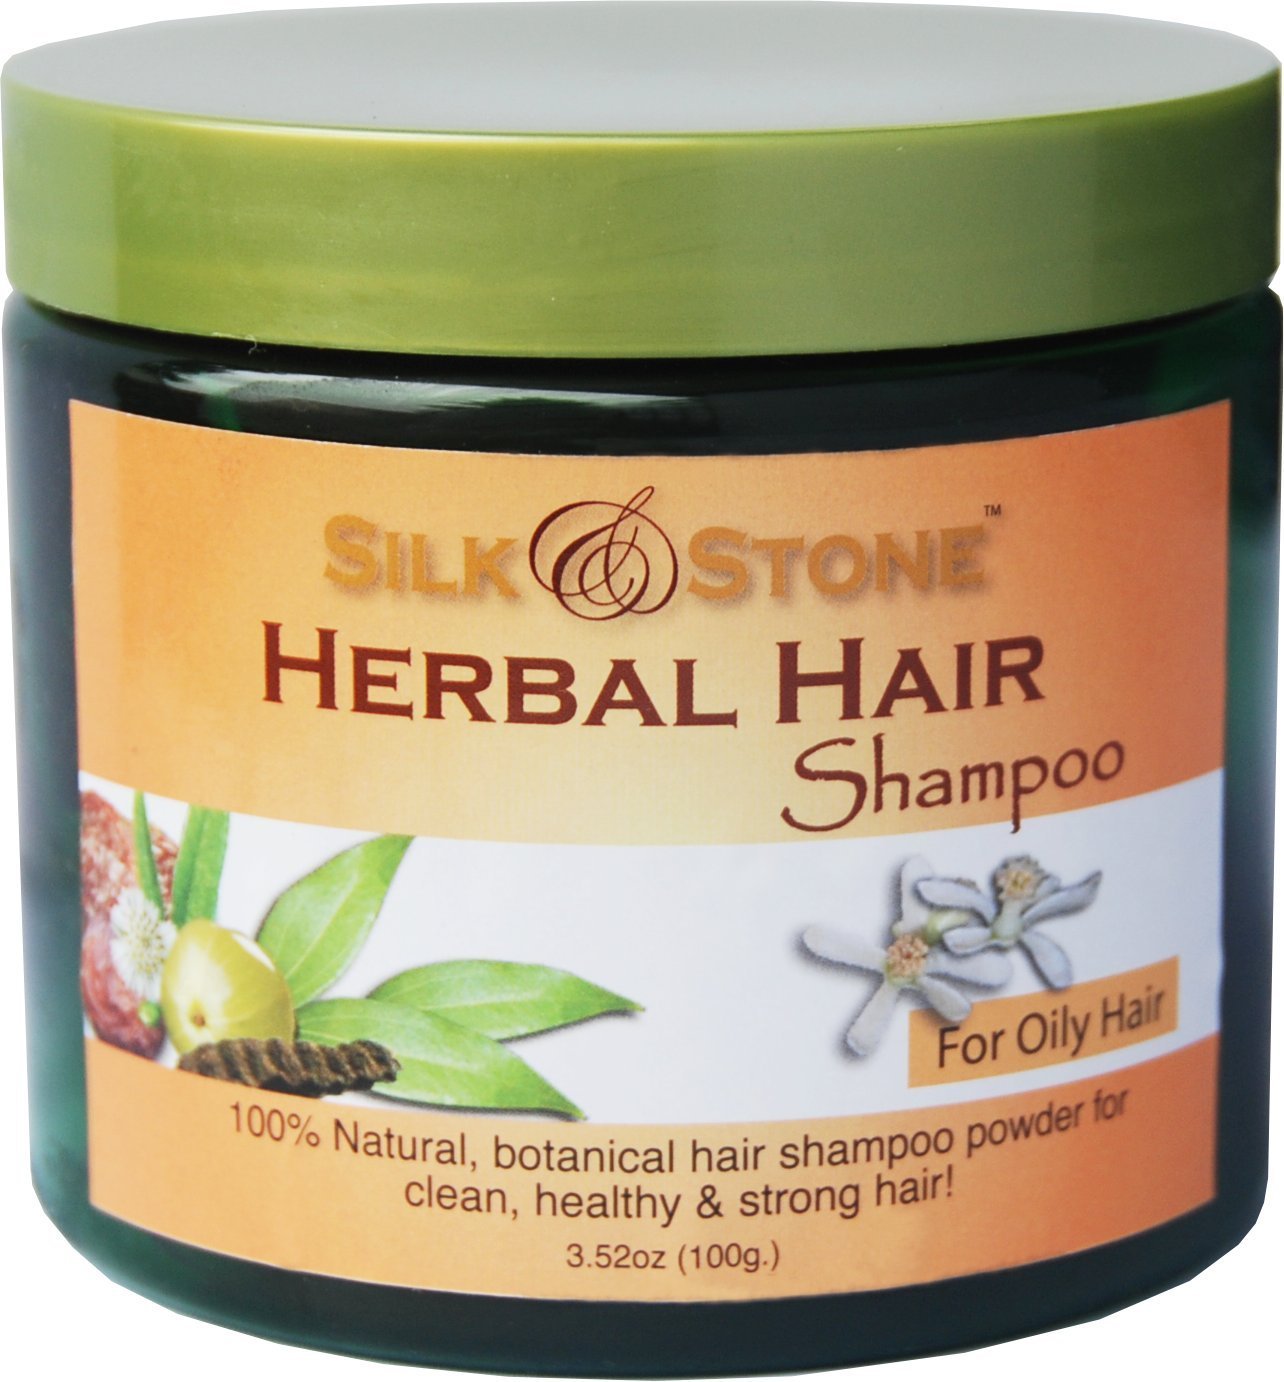 Silk & Stone Herbal Hair Shampoo Powder- Oily Hair